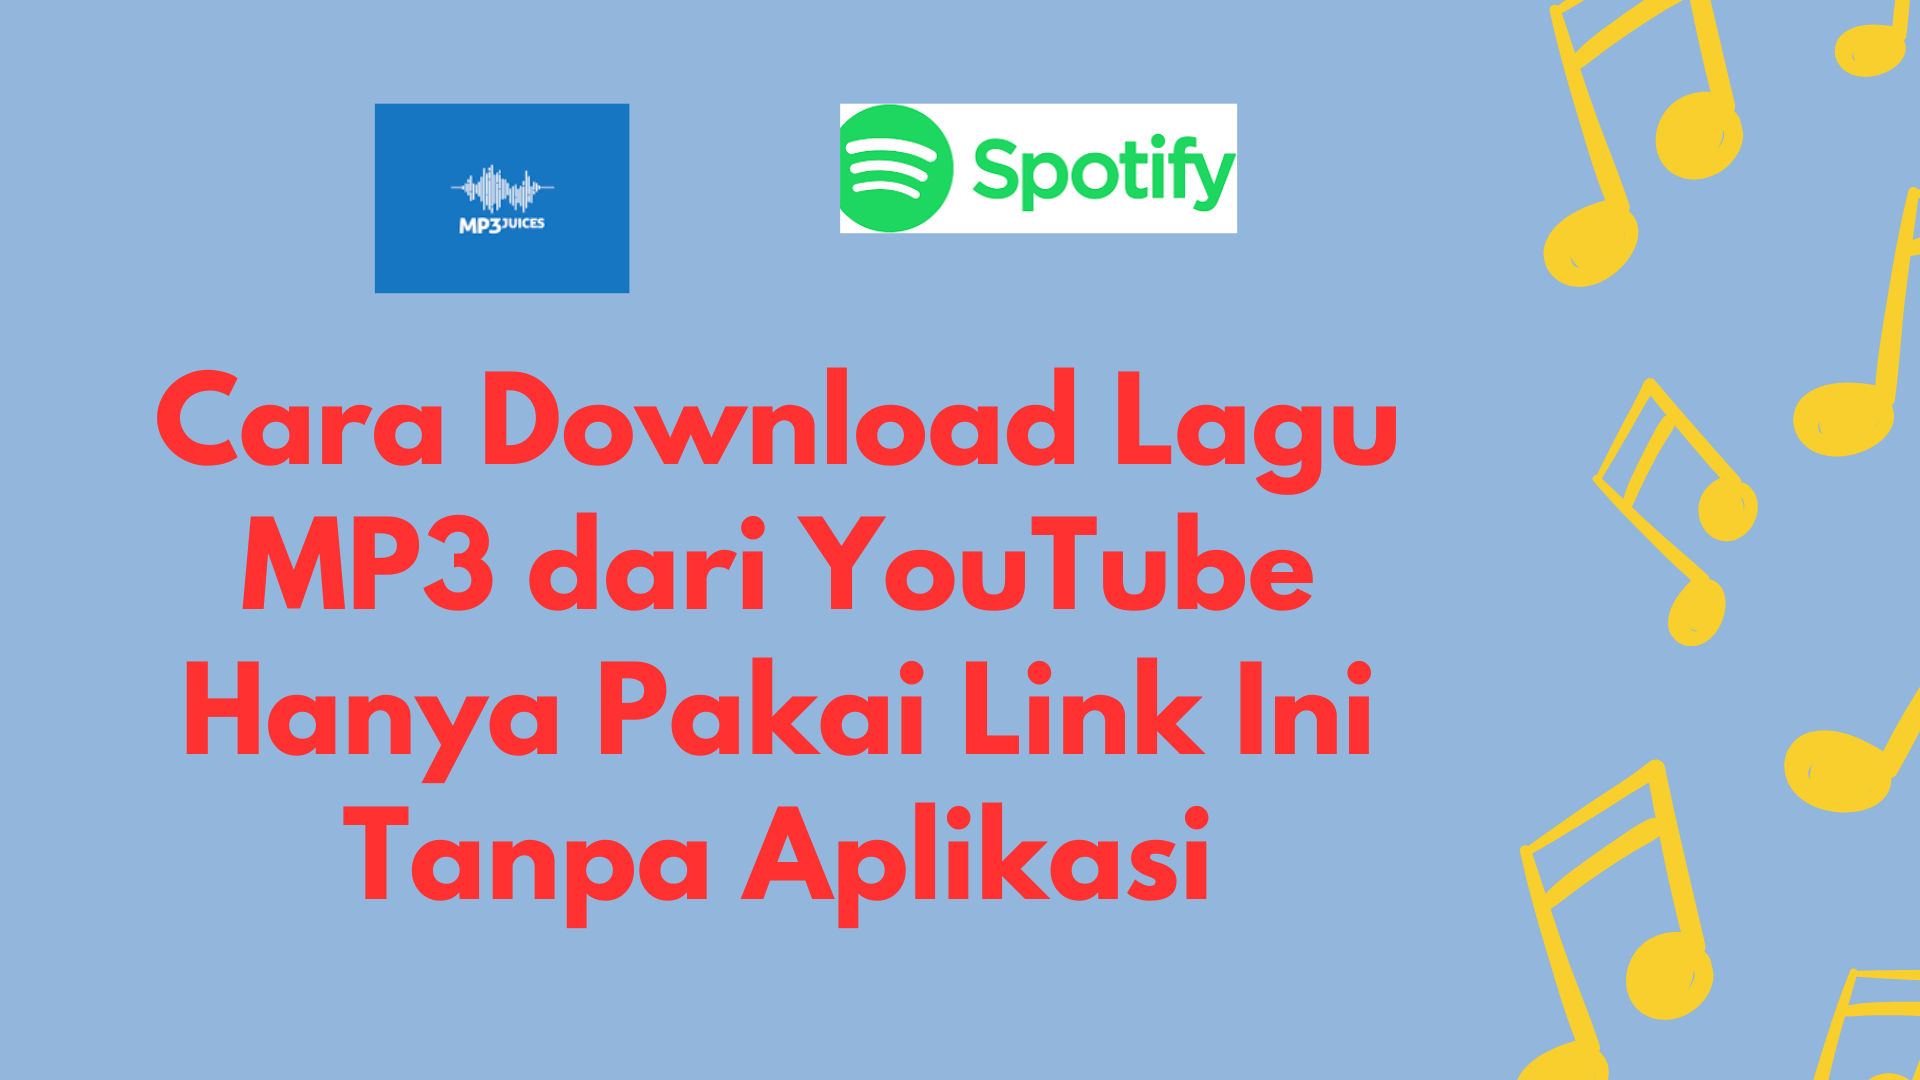 Cara Download Lagu MP3 dari YouTube Hanya Pakai Link Ini Tanpa Aplikasi